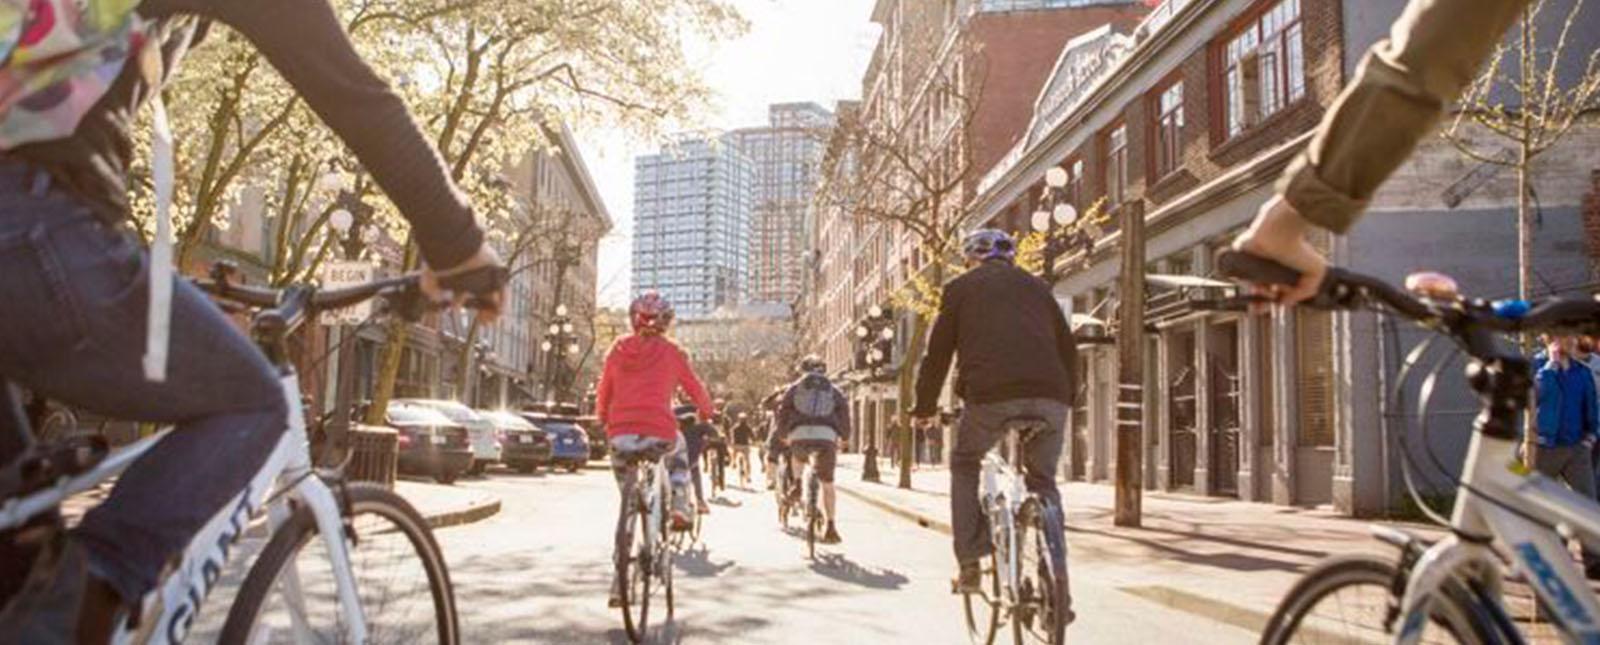 Vancouver fietstocht door stad